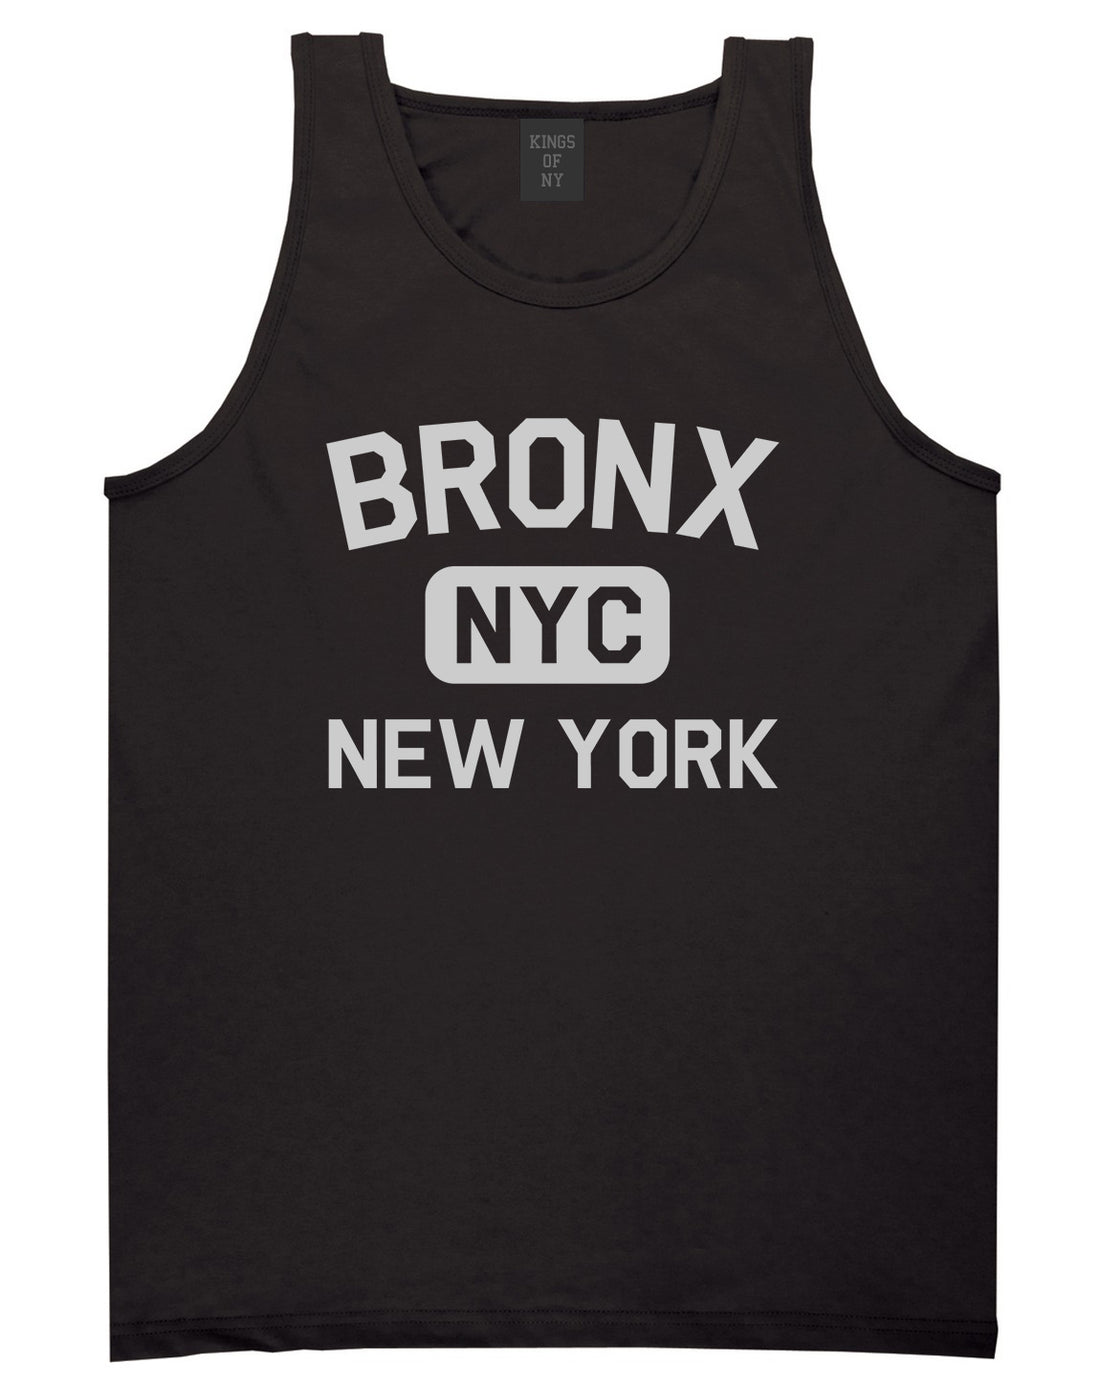 Bronx Gym NYC New York Mens Tank Top T-Shirt Black